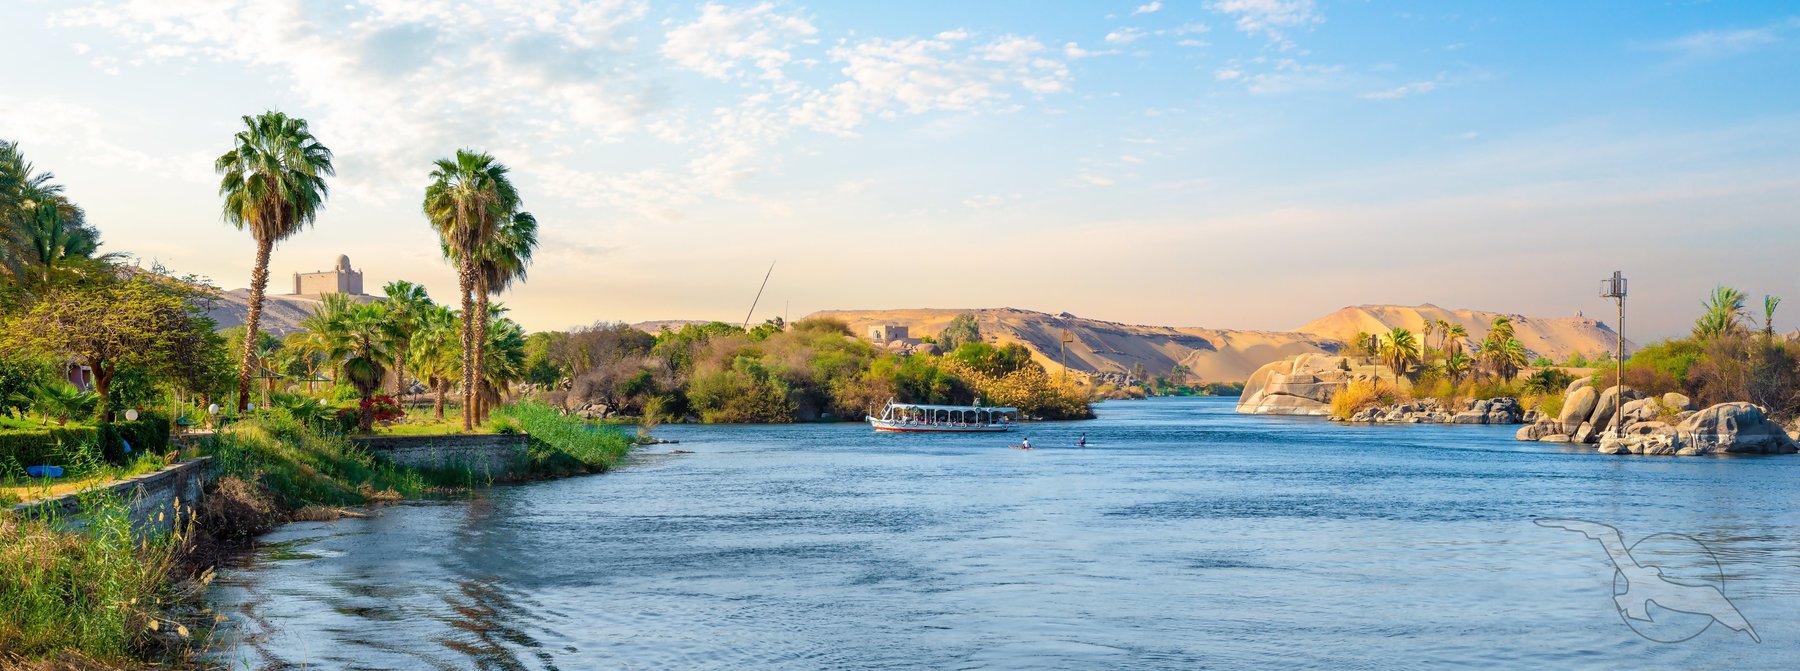 Ufer am Nil bei Assuan, Ägypten